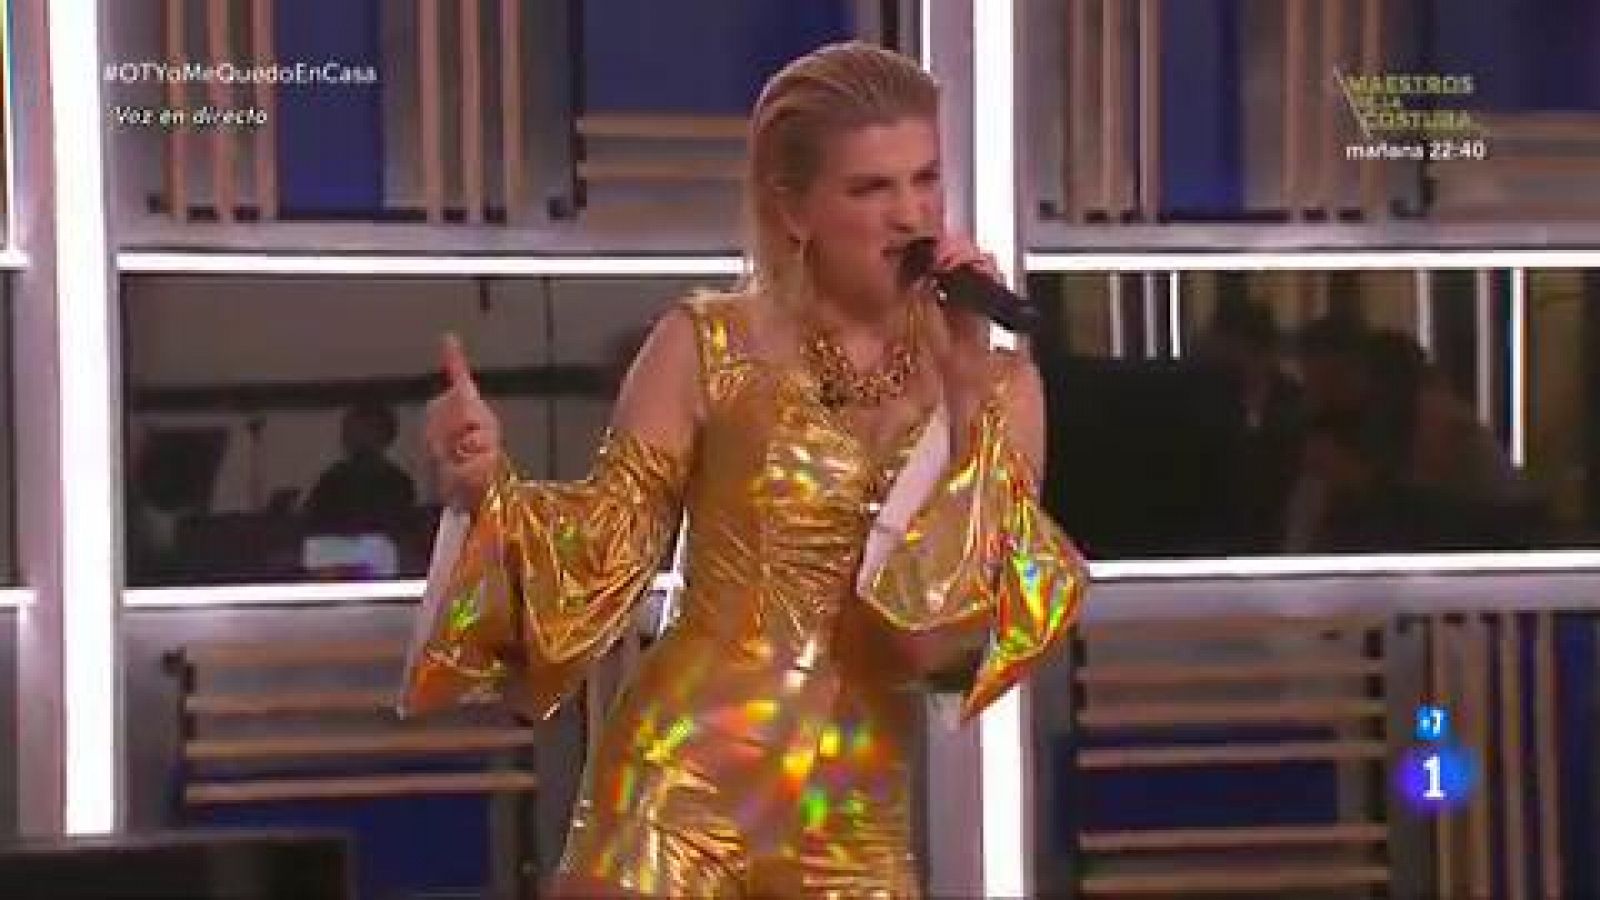 Samantha canta "Milionària", de Rosalía, en la Gala OTYoMeQuedoEnCasa de Operación Triunfo 2020